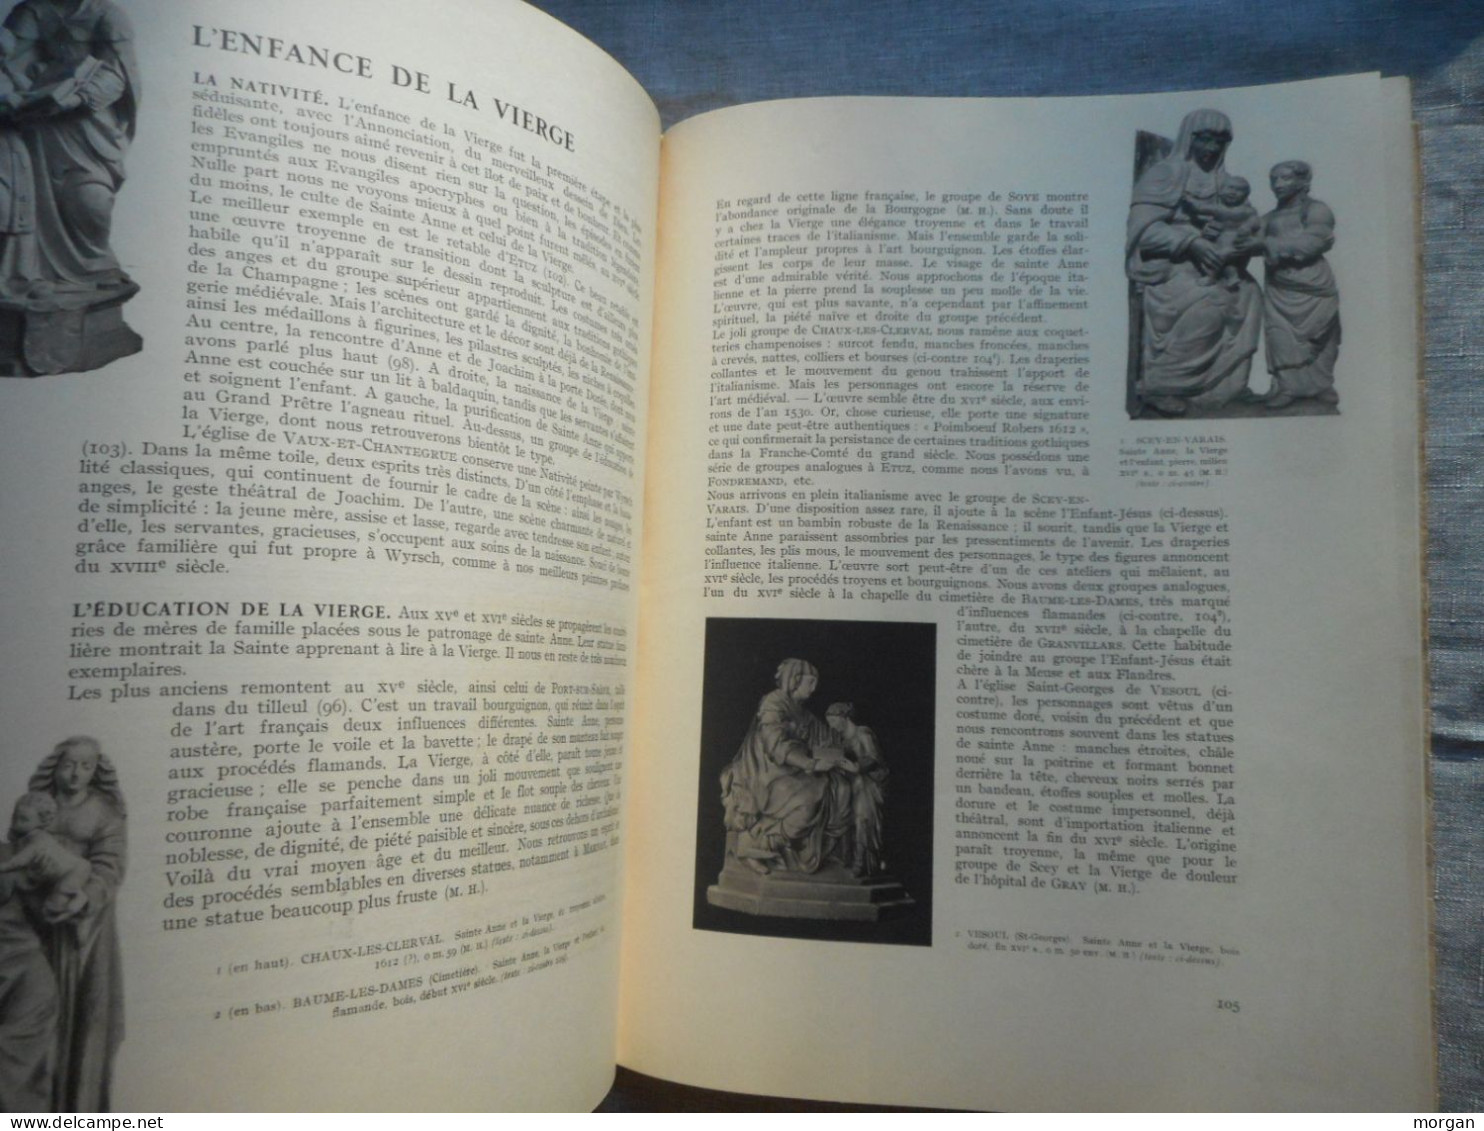 FRANCHE COMTE, VIERGES COMTOISES, MARCEL FERRY 1946, CULTE ET IMAGES DE LA VIERGE - Sin Clasificación